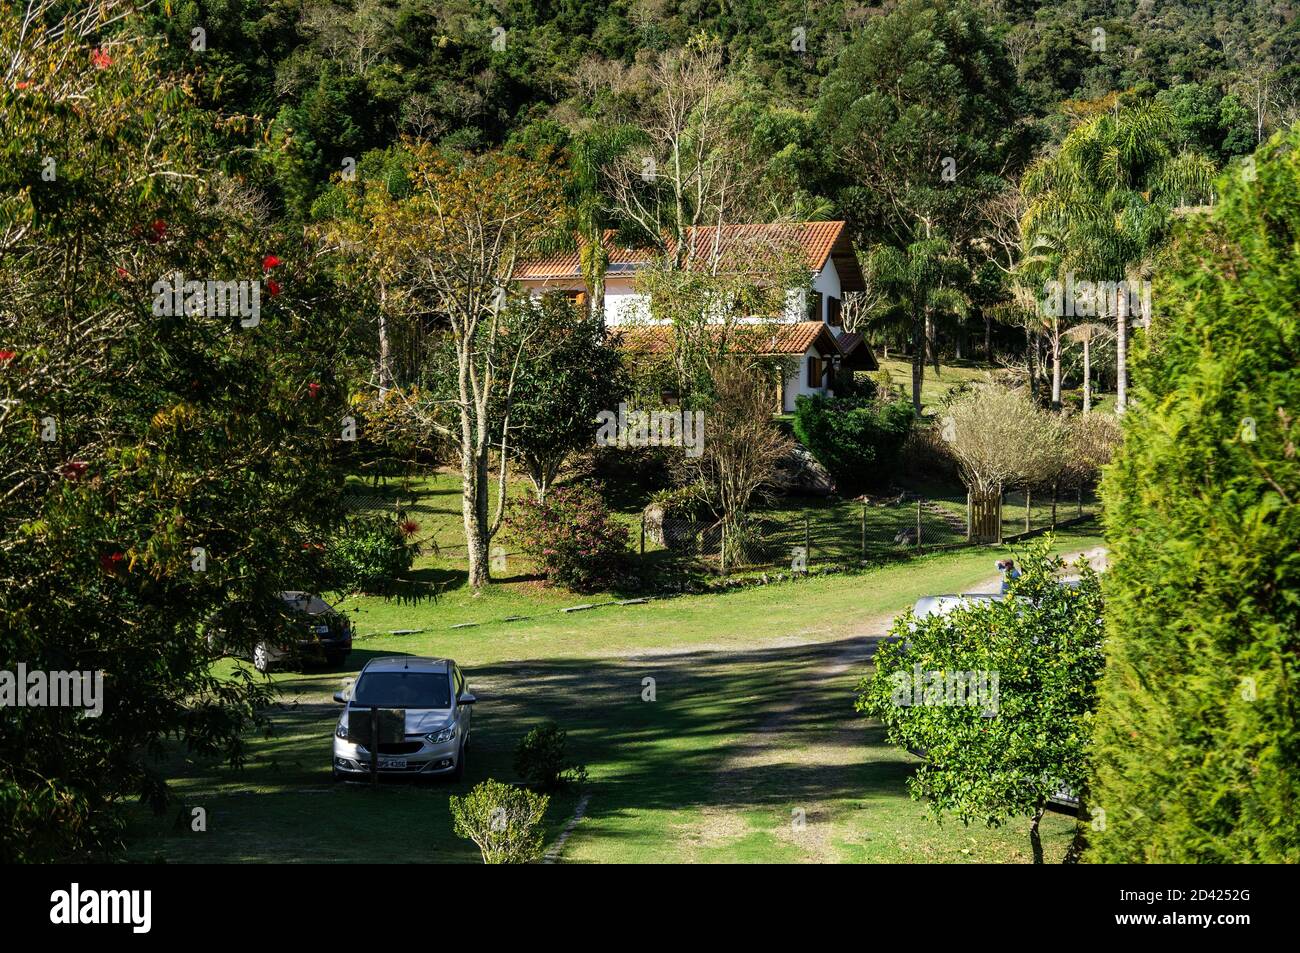 Il parcheggio e l'ingresso della birreria Wolkenburg sono circondati da una vegetazione verde e dalla foresta della campagna della regione di Cunha. Foto Stock